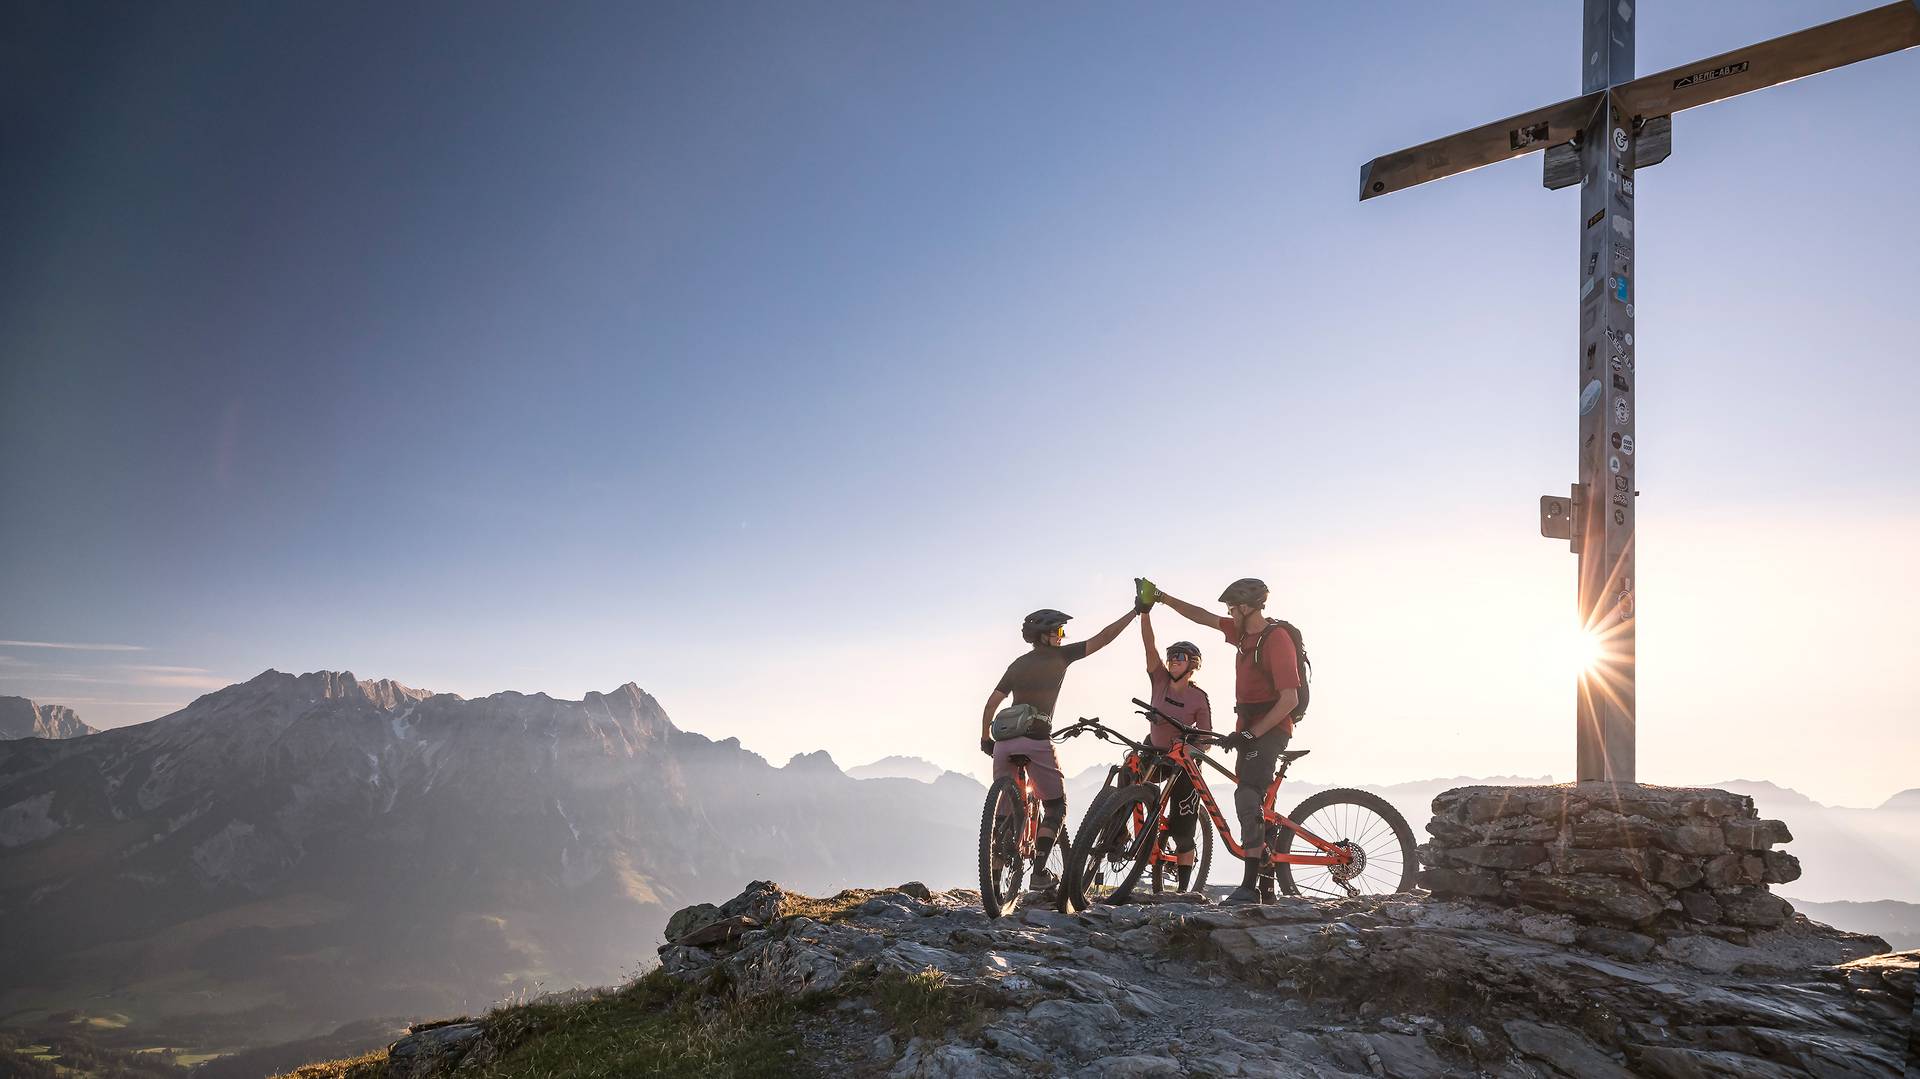 Drei Mountainbiker feiern mit einem ausgiebigen "high five" die geschaffte auffahrt zur Bergspitze während im Hintergrund der Sonnenuntergang das Bergkreuz erstrahlen lässt. 